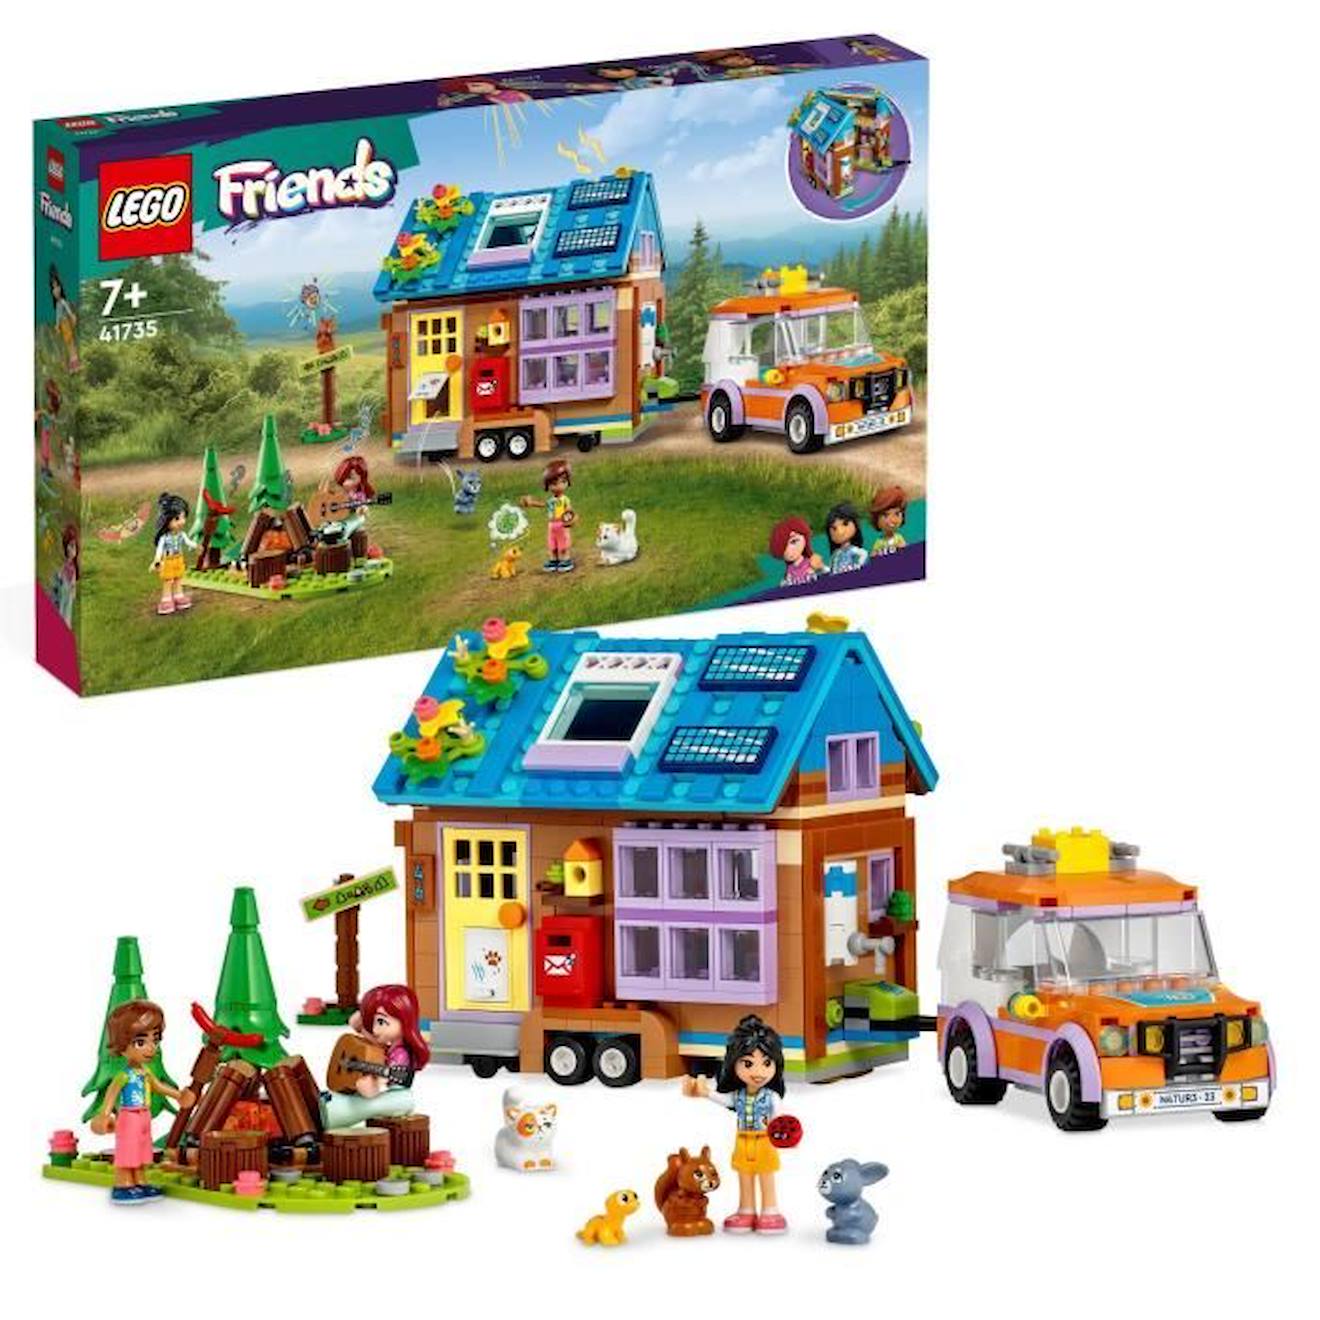 lego-friends-41735-la-mini-maison-mobile-jeu-camping-avec-voiture-jouet-et-mini-poupees.jpg